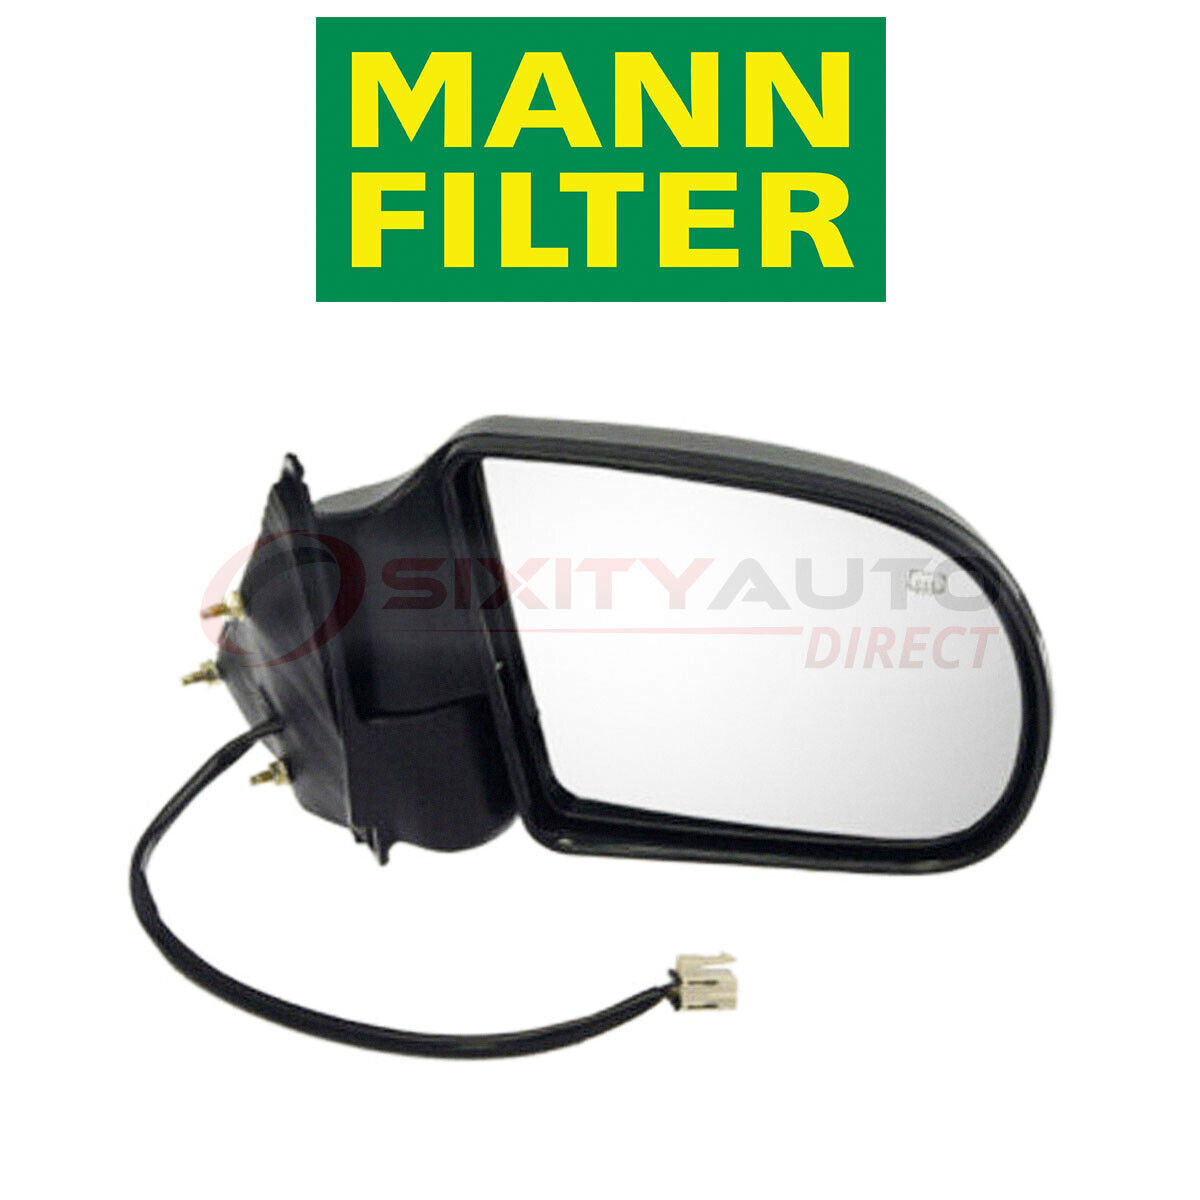 MANN FILTER WK820/2X Fuel Filter for Gas Filtration System eg